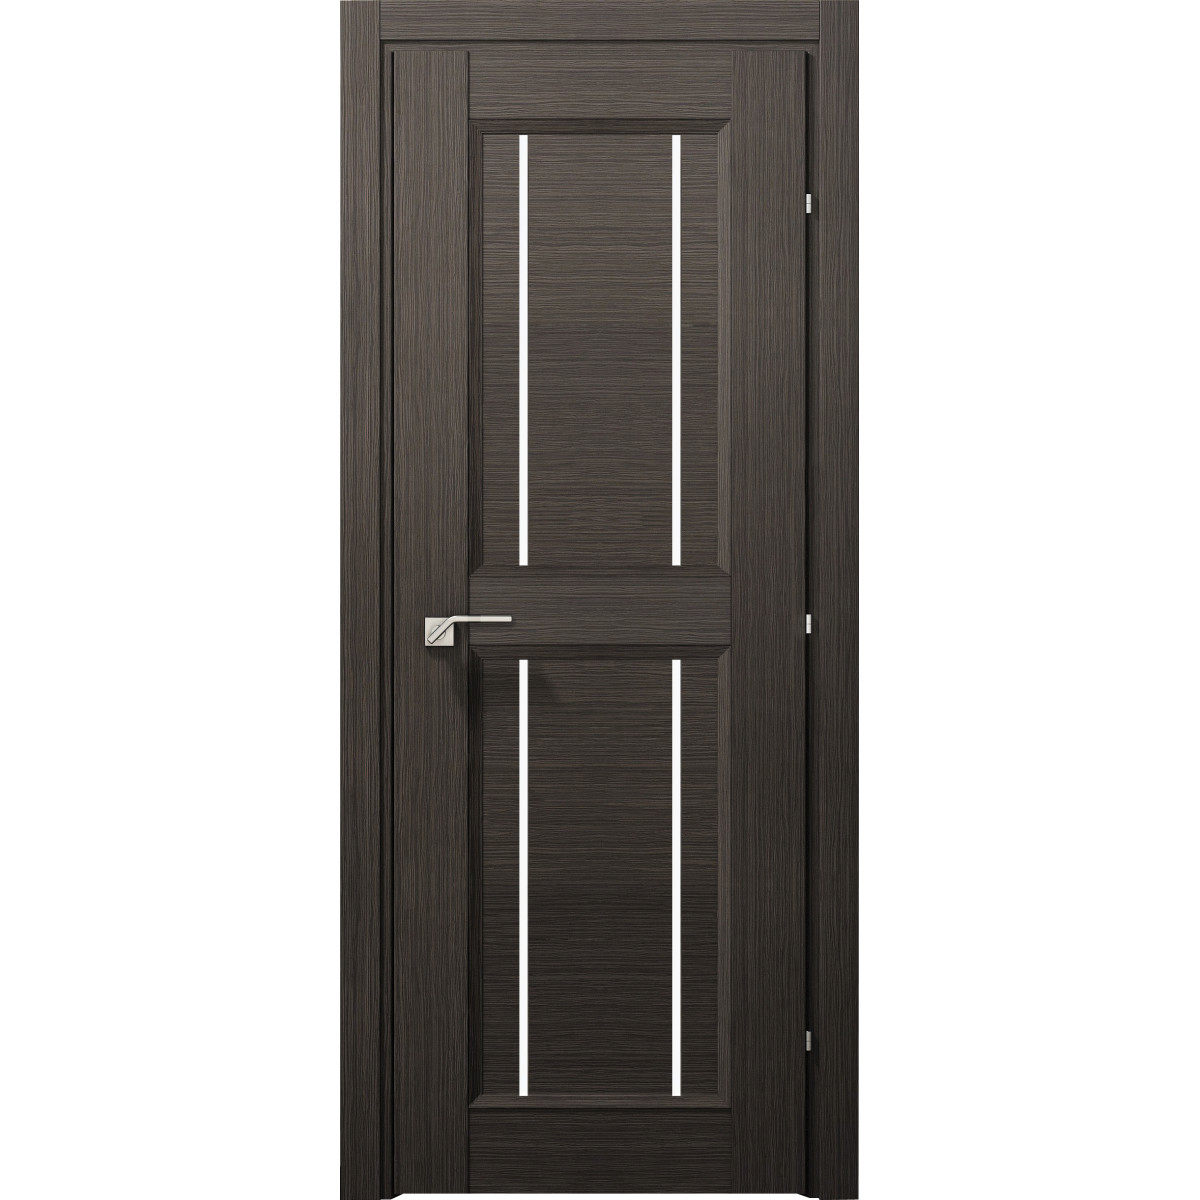 Дверь межкомнатная остеклённая с замком в комплекте Саратога 90x200 см ламинация цвет чёрный дуб